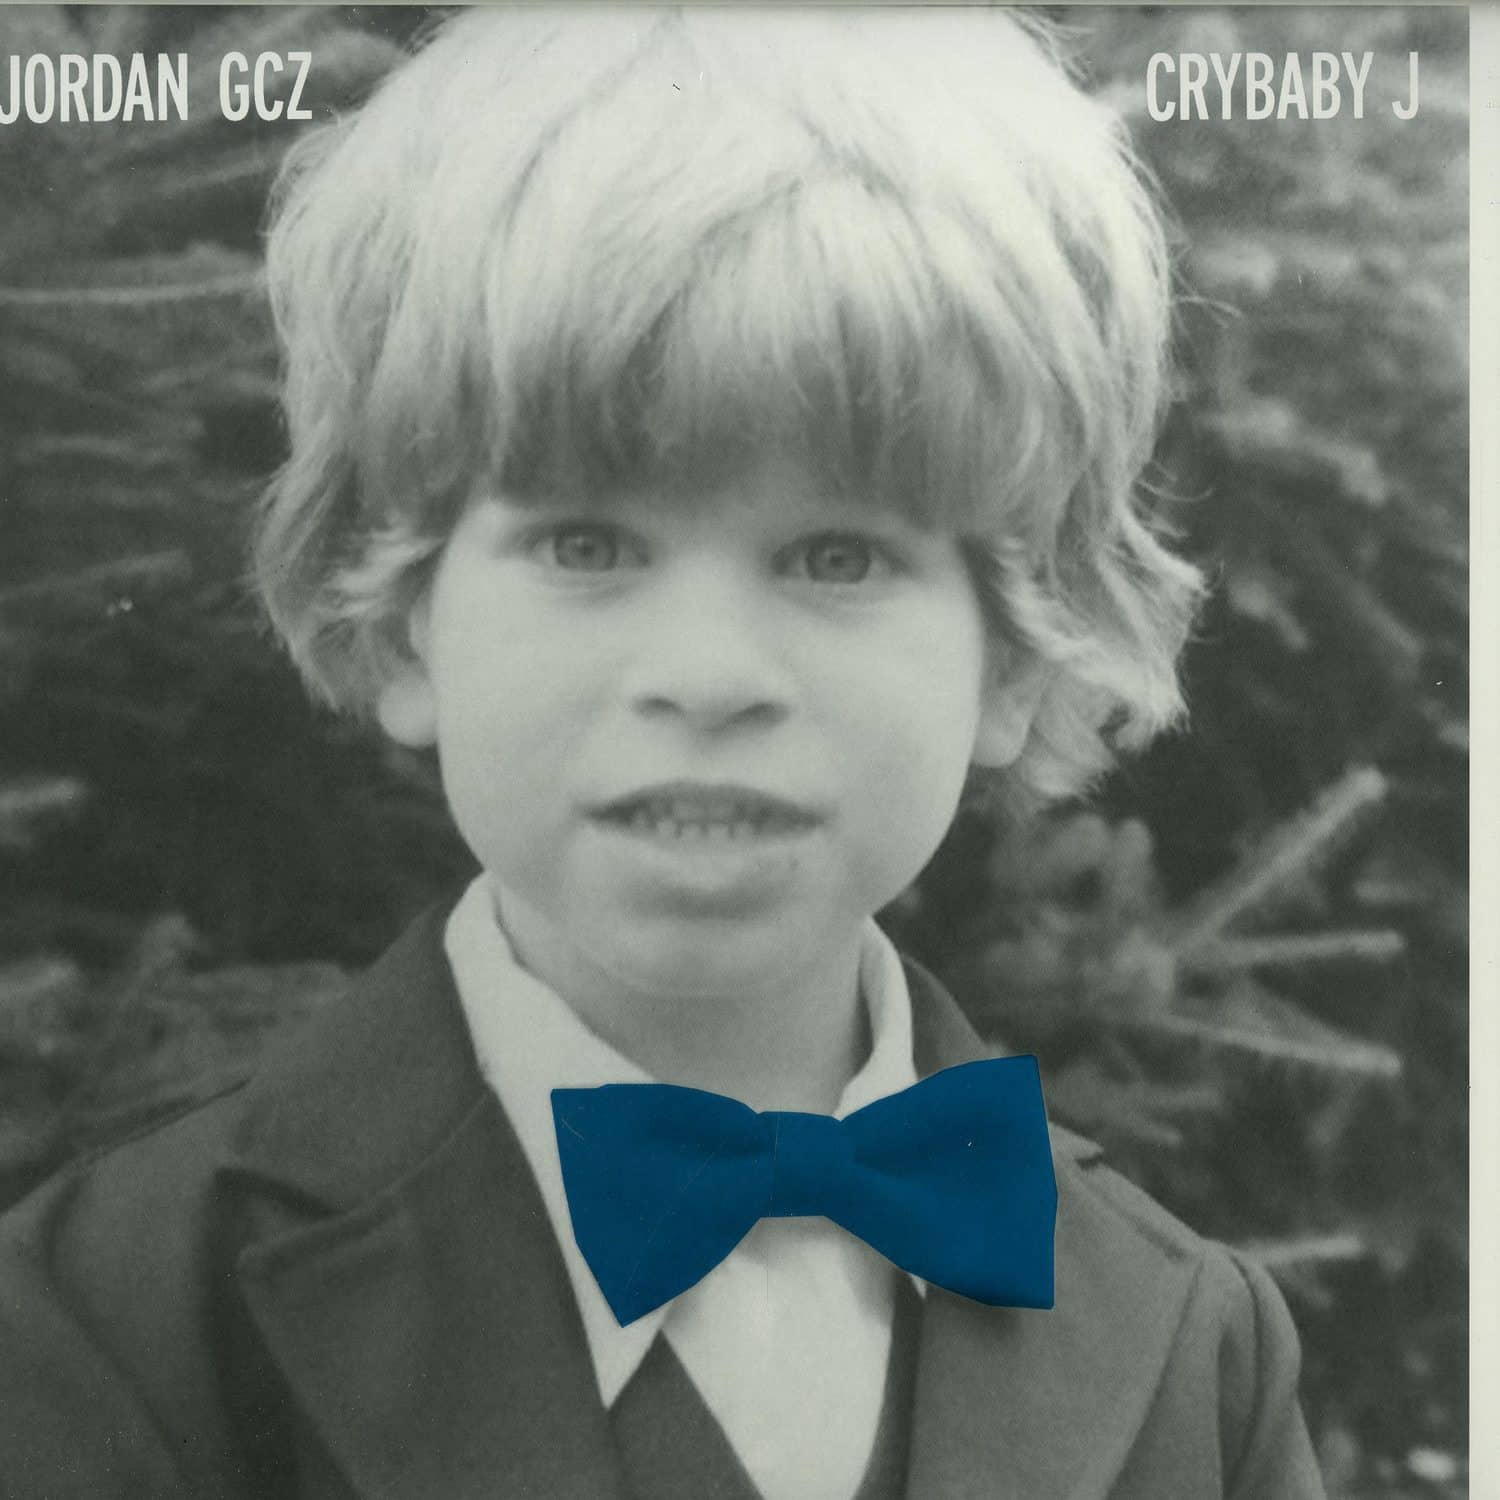 Jordan GCZ - CRYBABY J